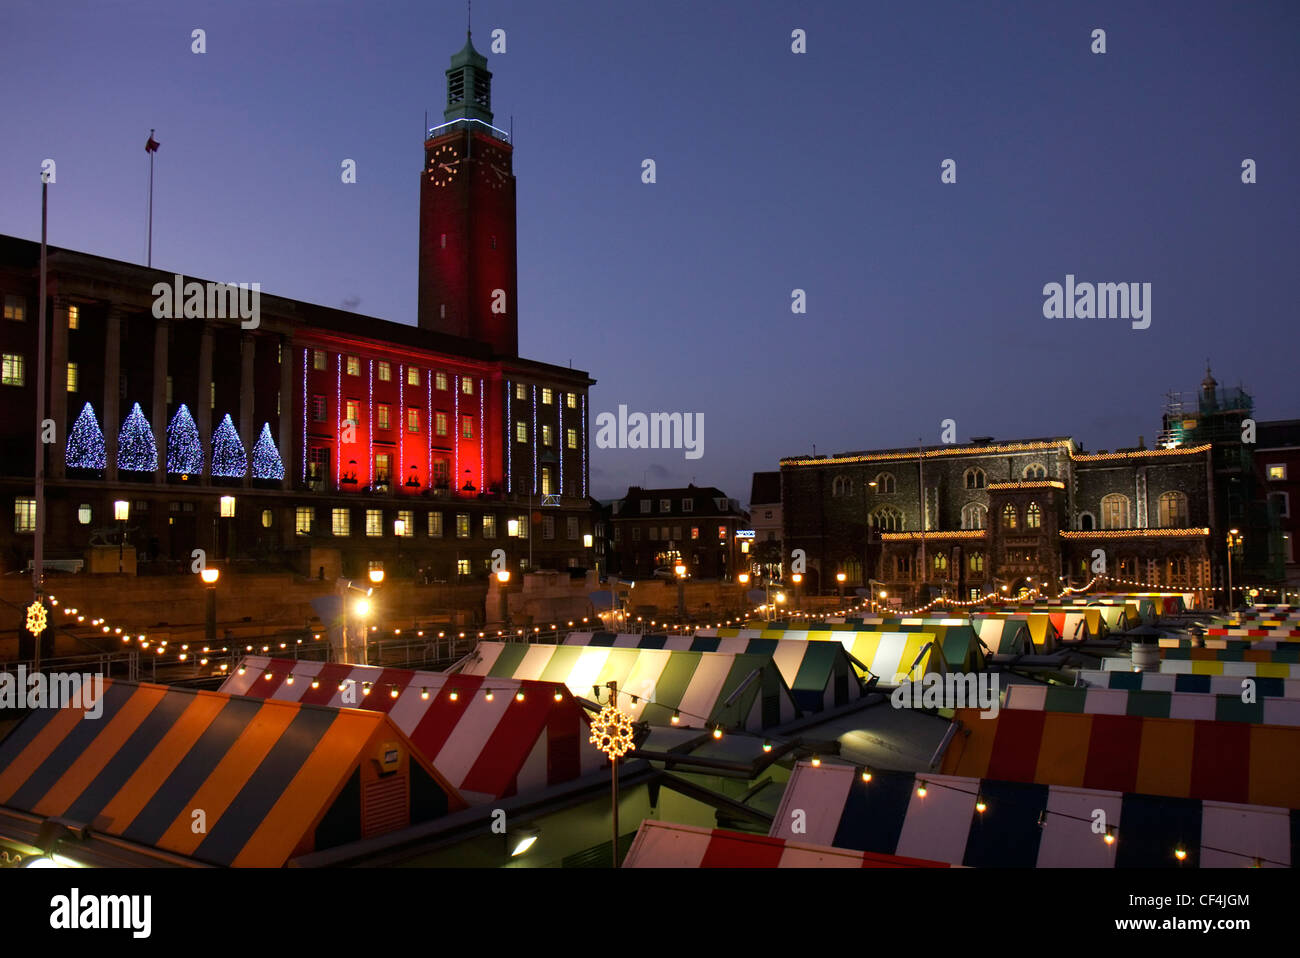 Eine Nacht Zeit Blick auf einem beleuchteten Norwich Markt und Rathaus zu Weihnachten. Stockfoto